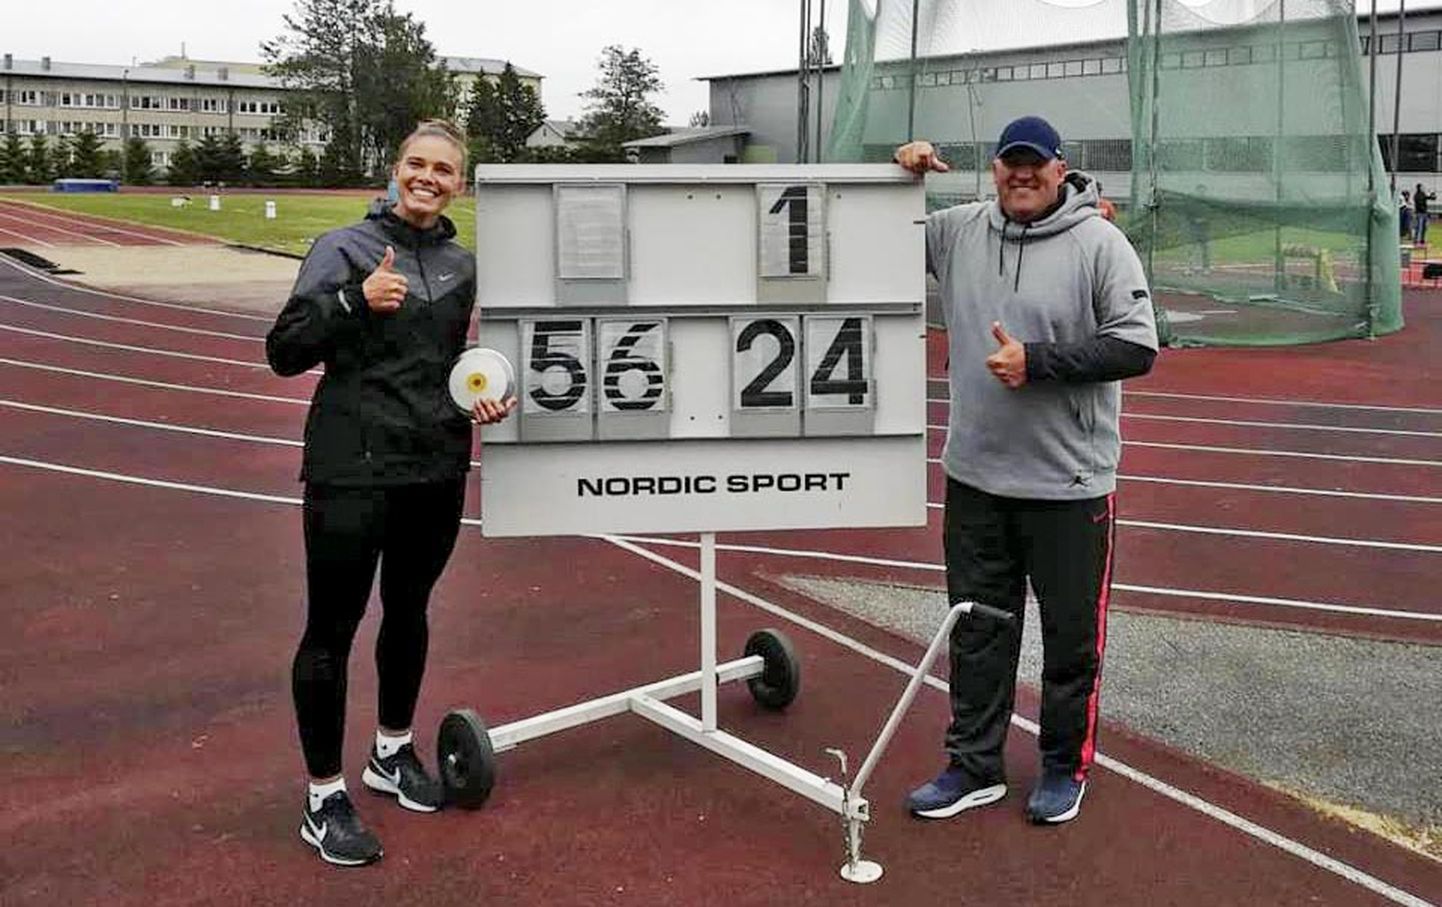 Viljandist pärit kettaheitja Kätlin Tõllasson püstitas teisipäeval uue isikliku rekordi, millega täitis ka Euroopa meistrivõistluste osavõtunormi.